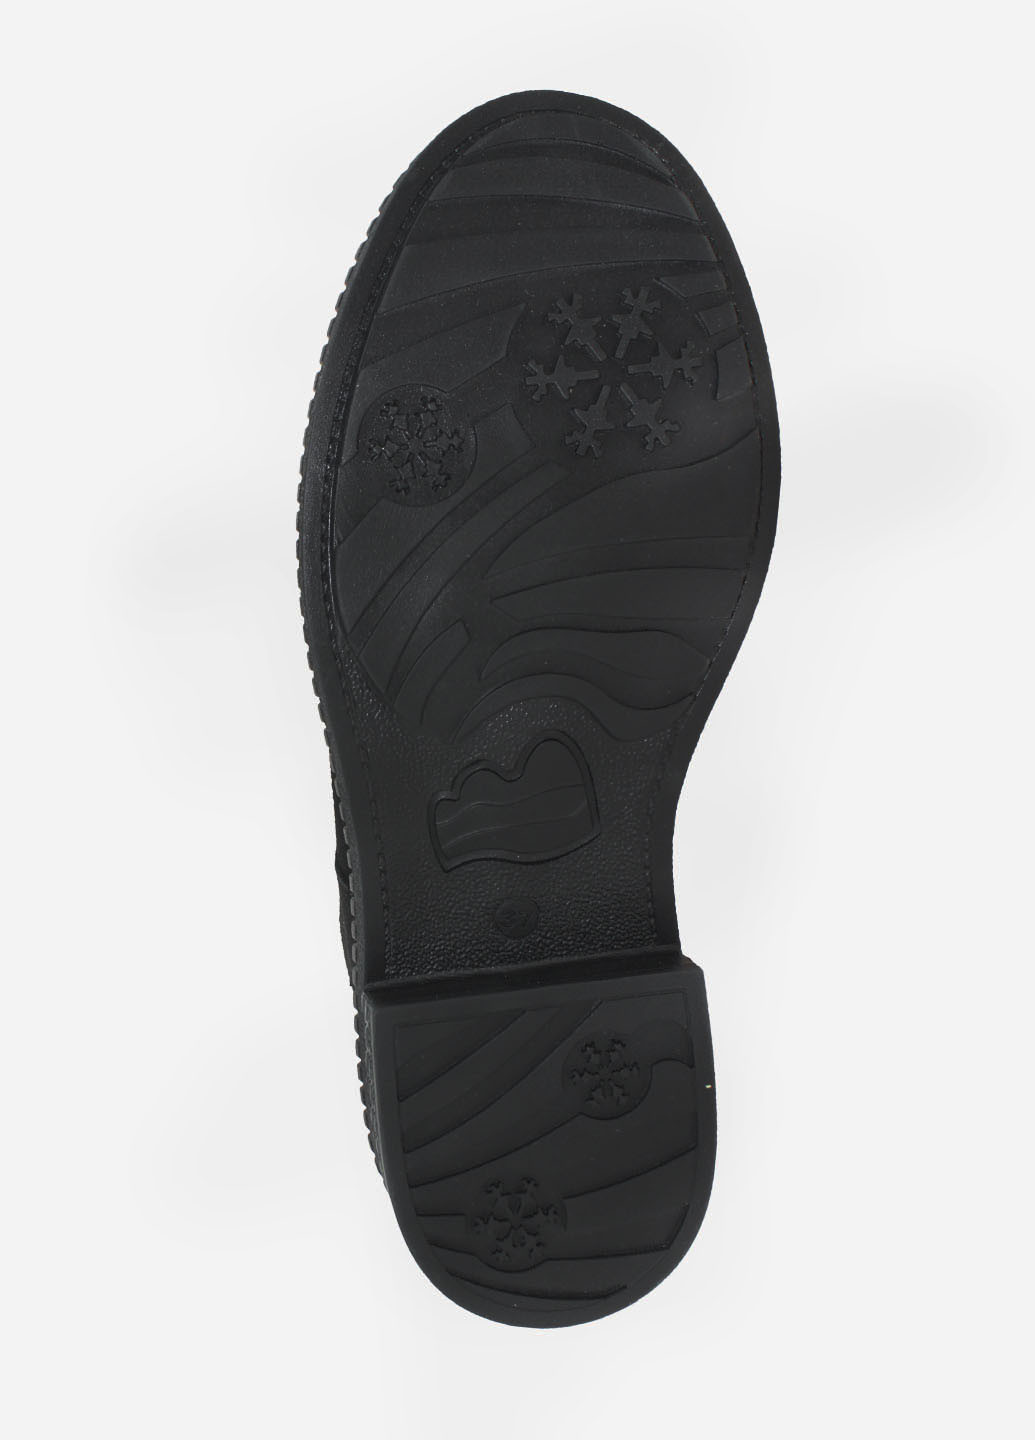 Зимние ботинки rs1105-11 черный Sothby's из натуральной замши